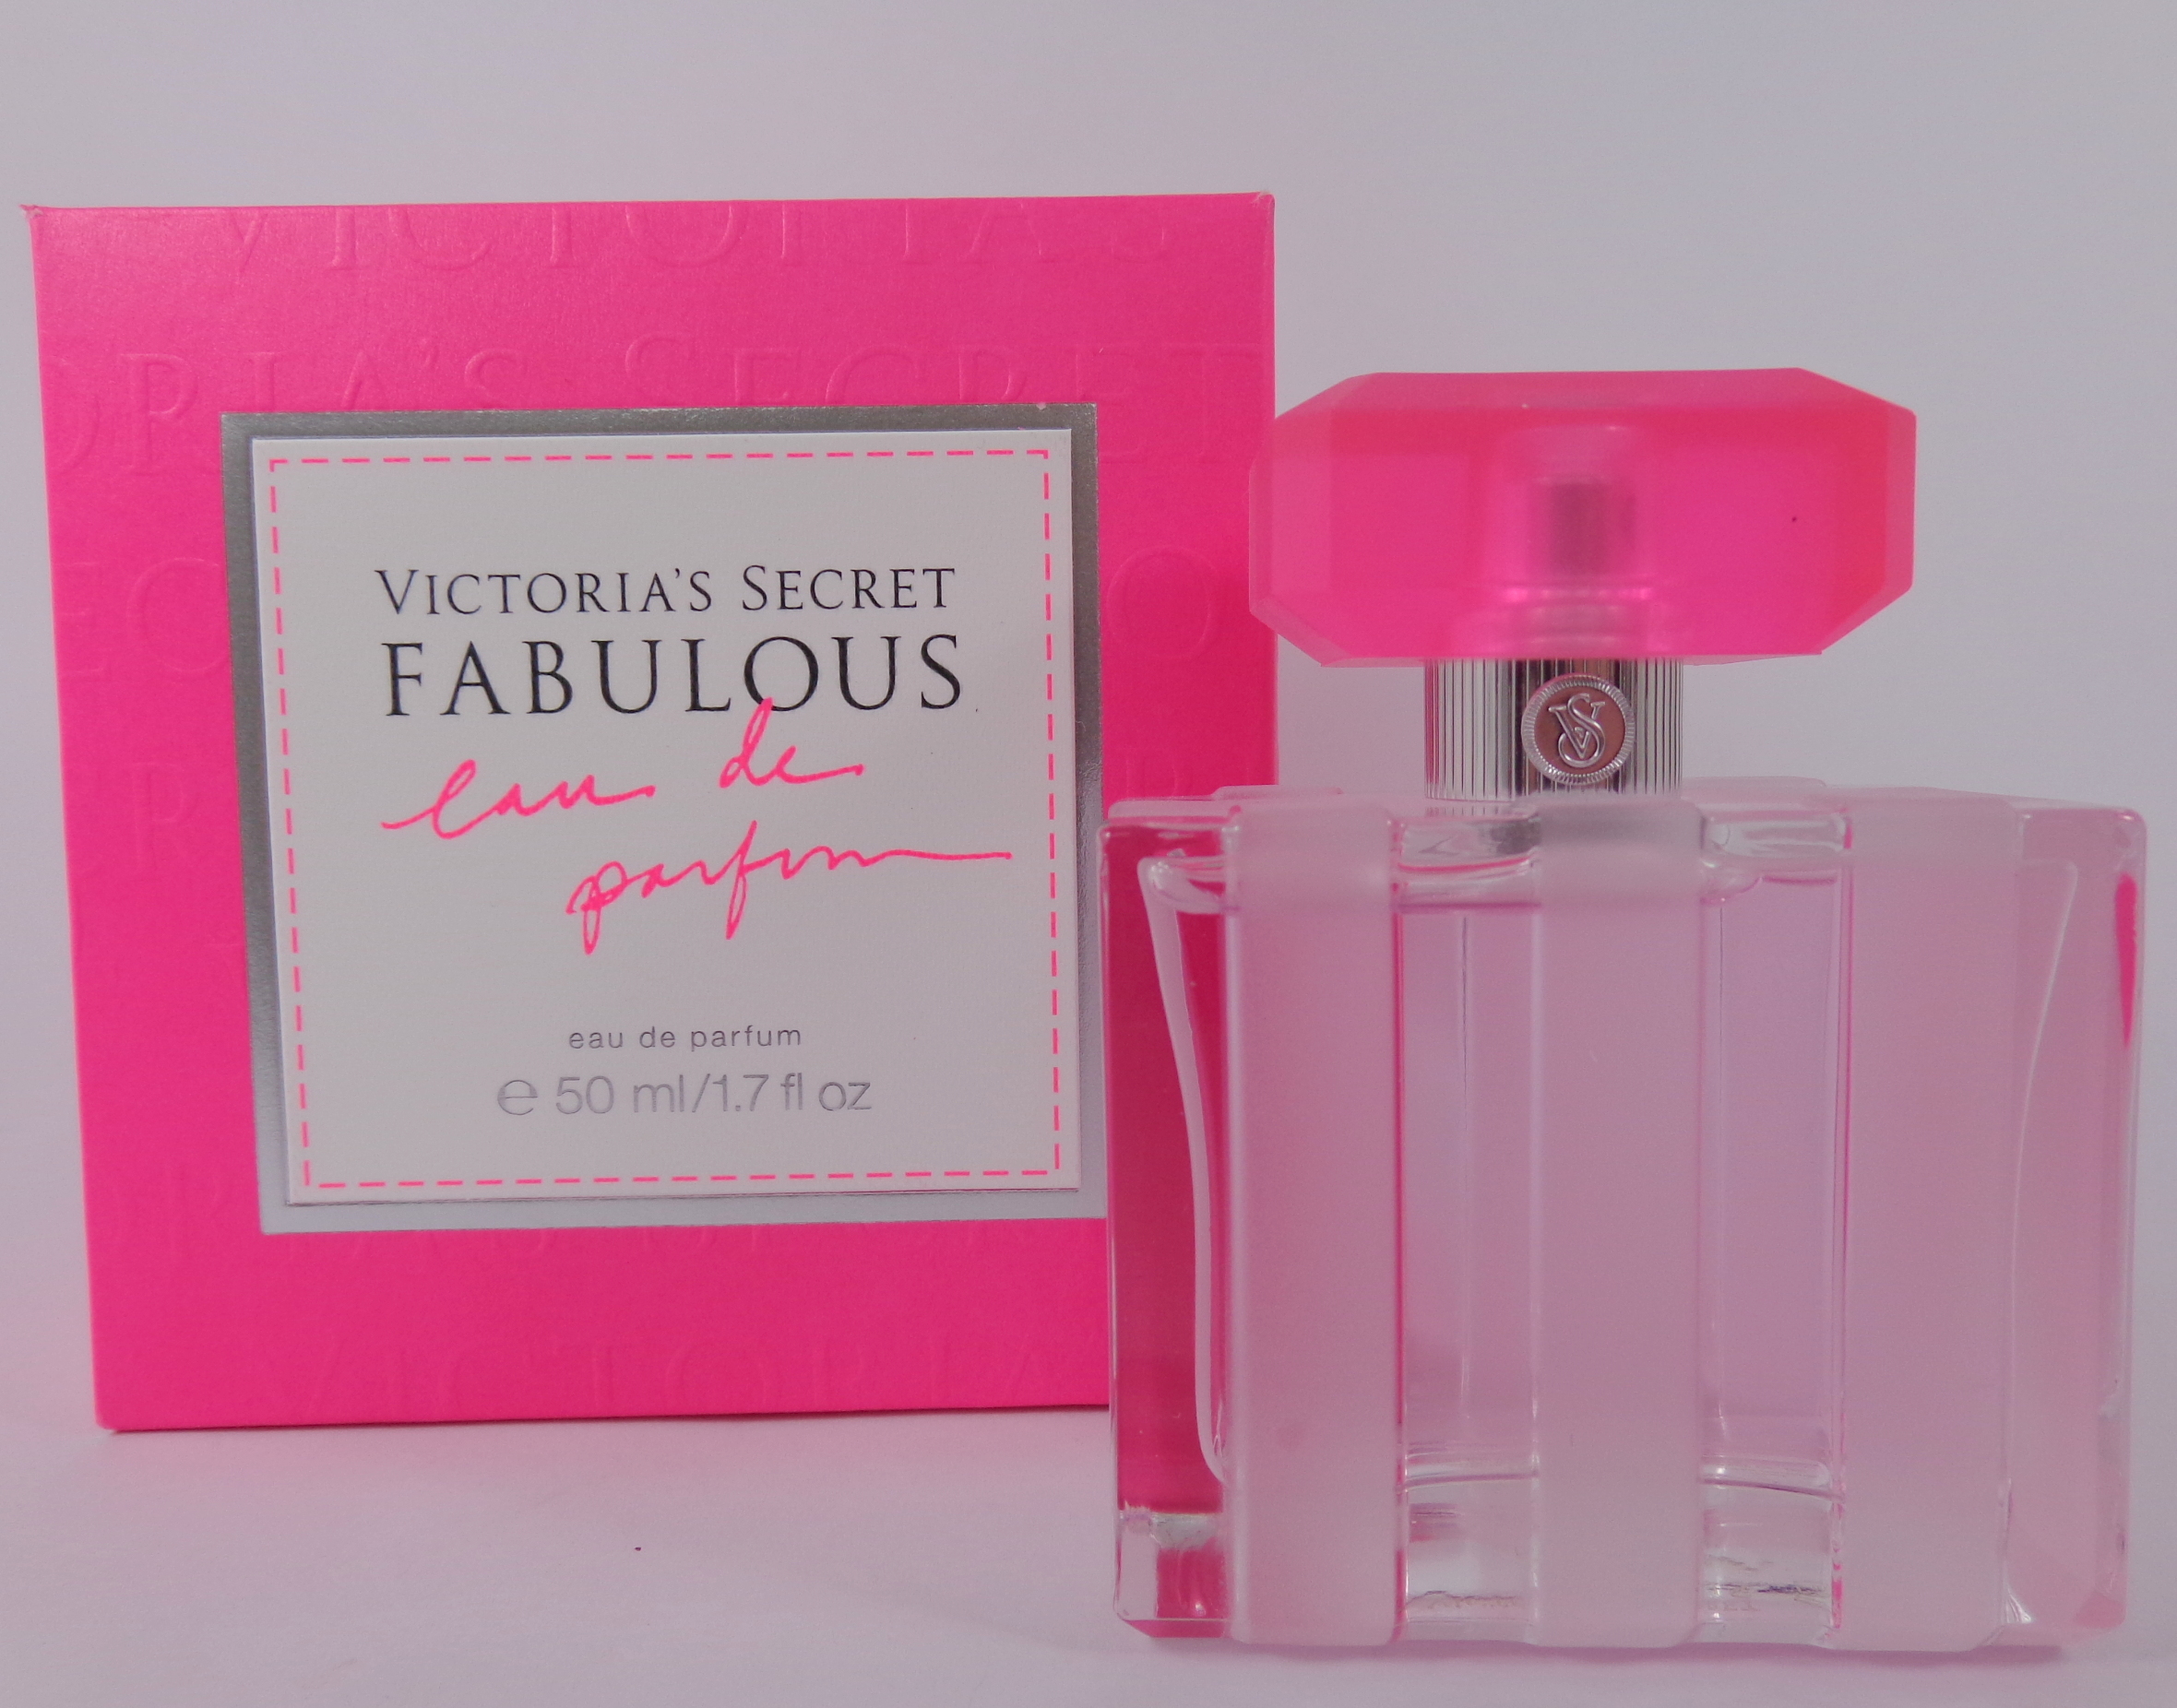 Victoria's Secret Fabulous Eau de Parfum - My Highest Self